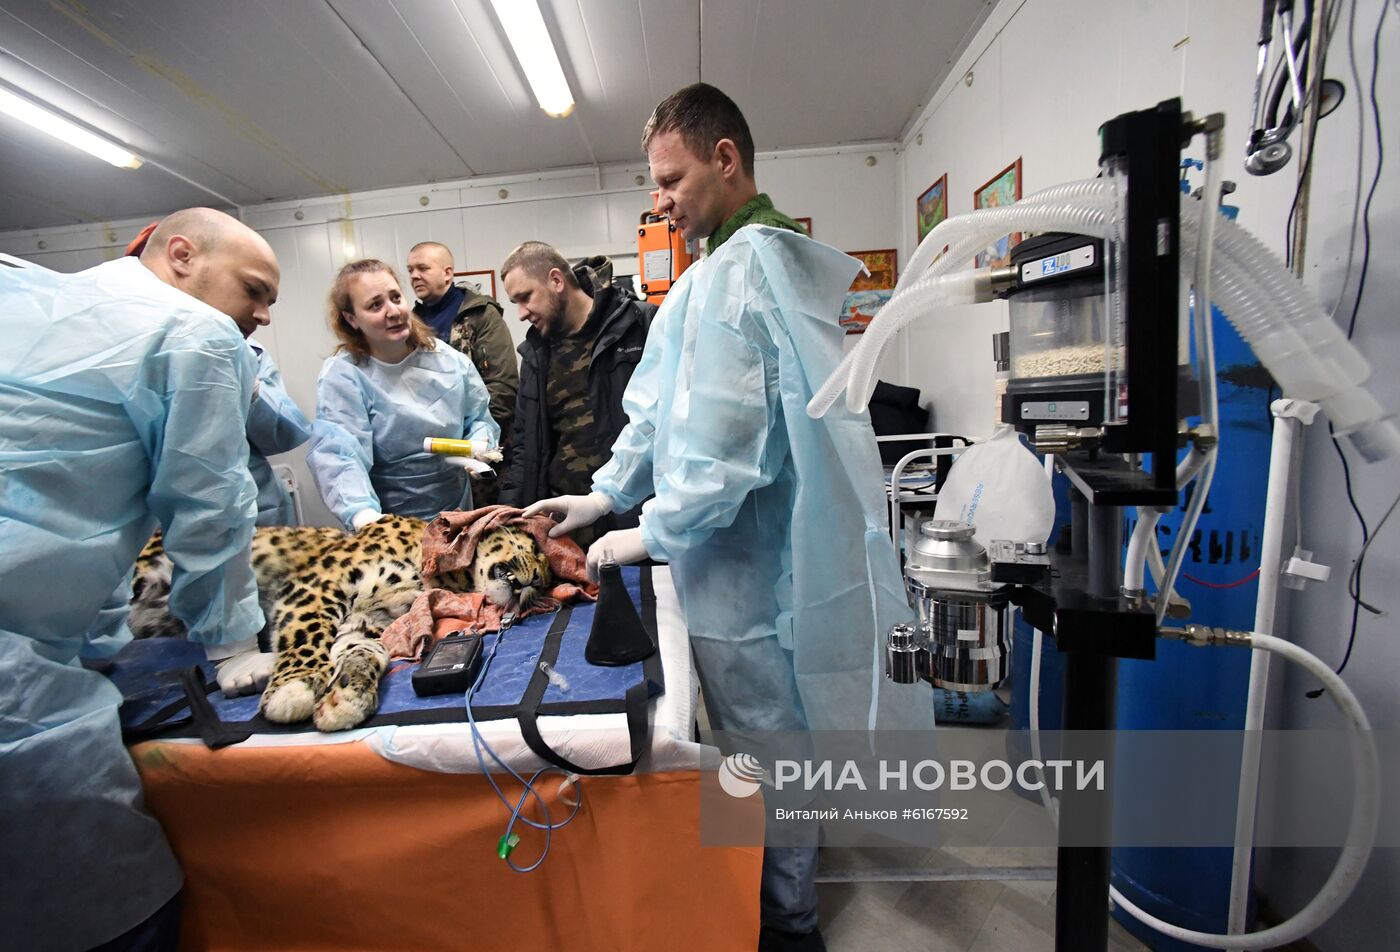 Спасенного дальневосточного леопарда из Приморья отправили в Москву на операцию